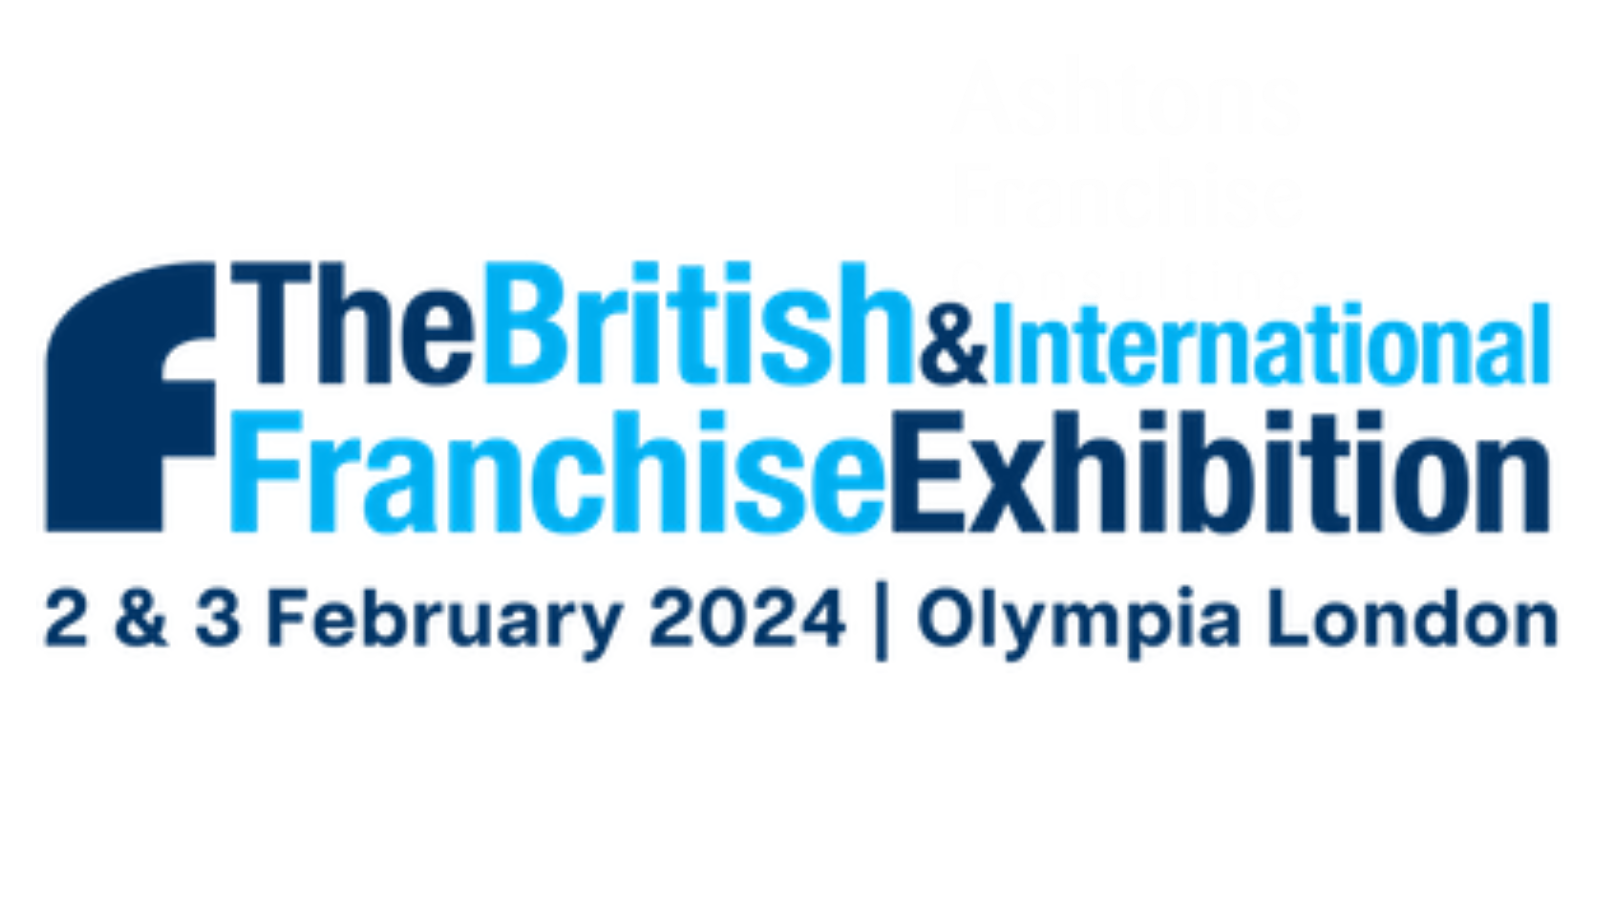 British & International Franchise Exhibition